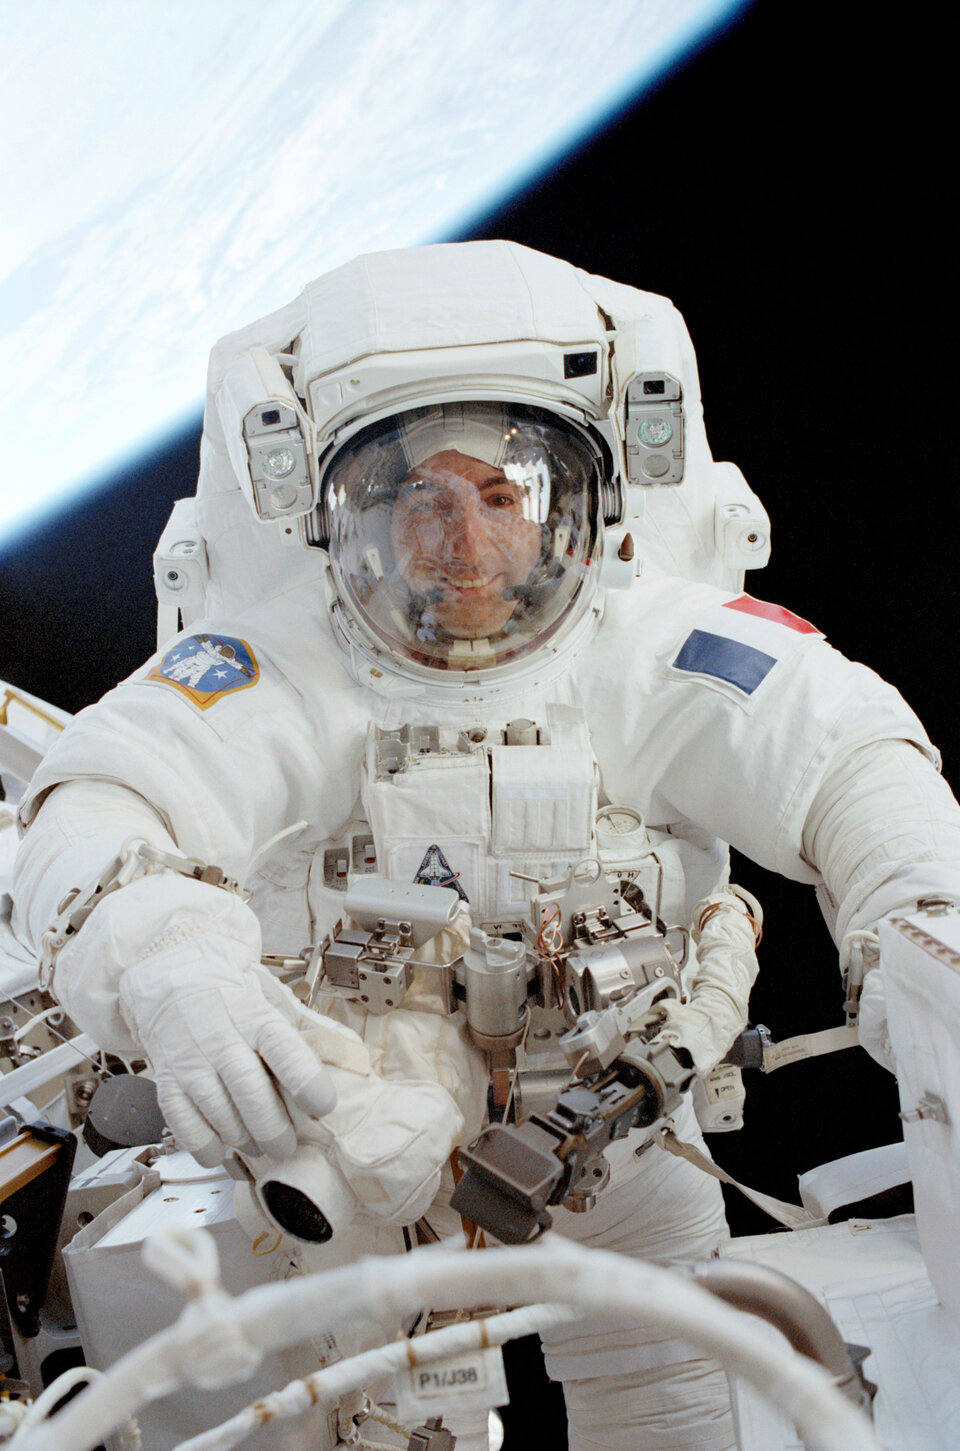 Spacewalk is scheduled for 3 August